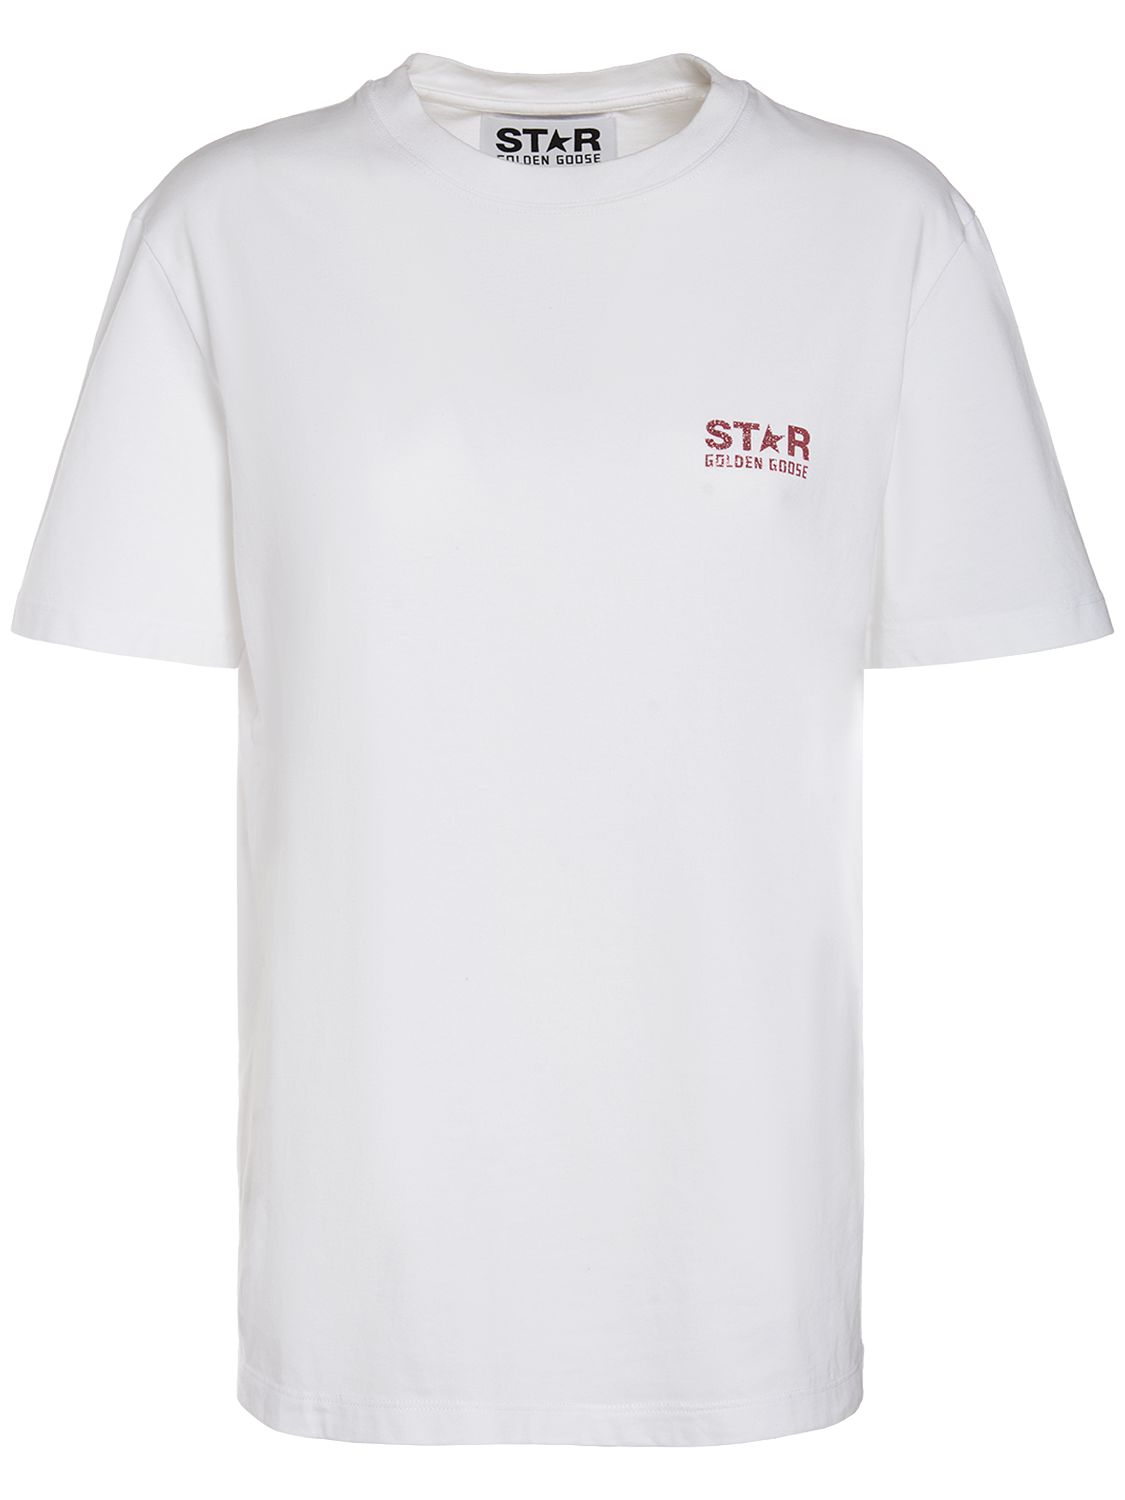 Star Glittered Cotton Jersey T-shirt